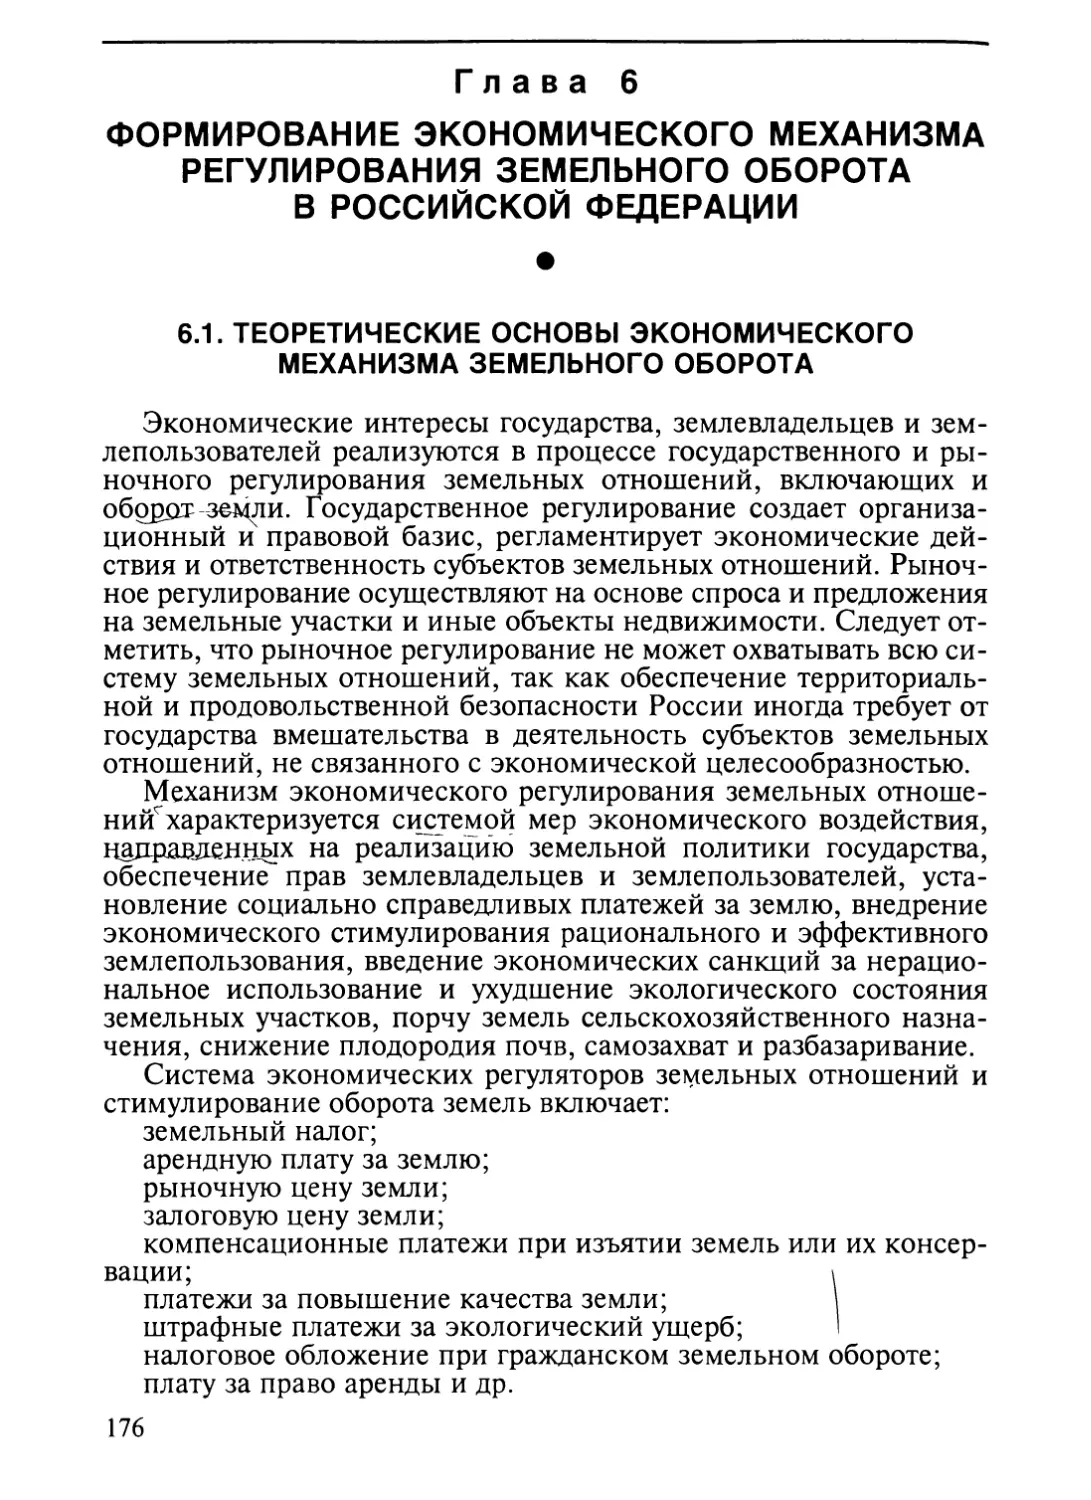 Глава 6. Формирование экономического механизма регулирования земельного оборота в Российской Федерации